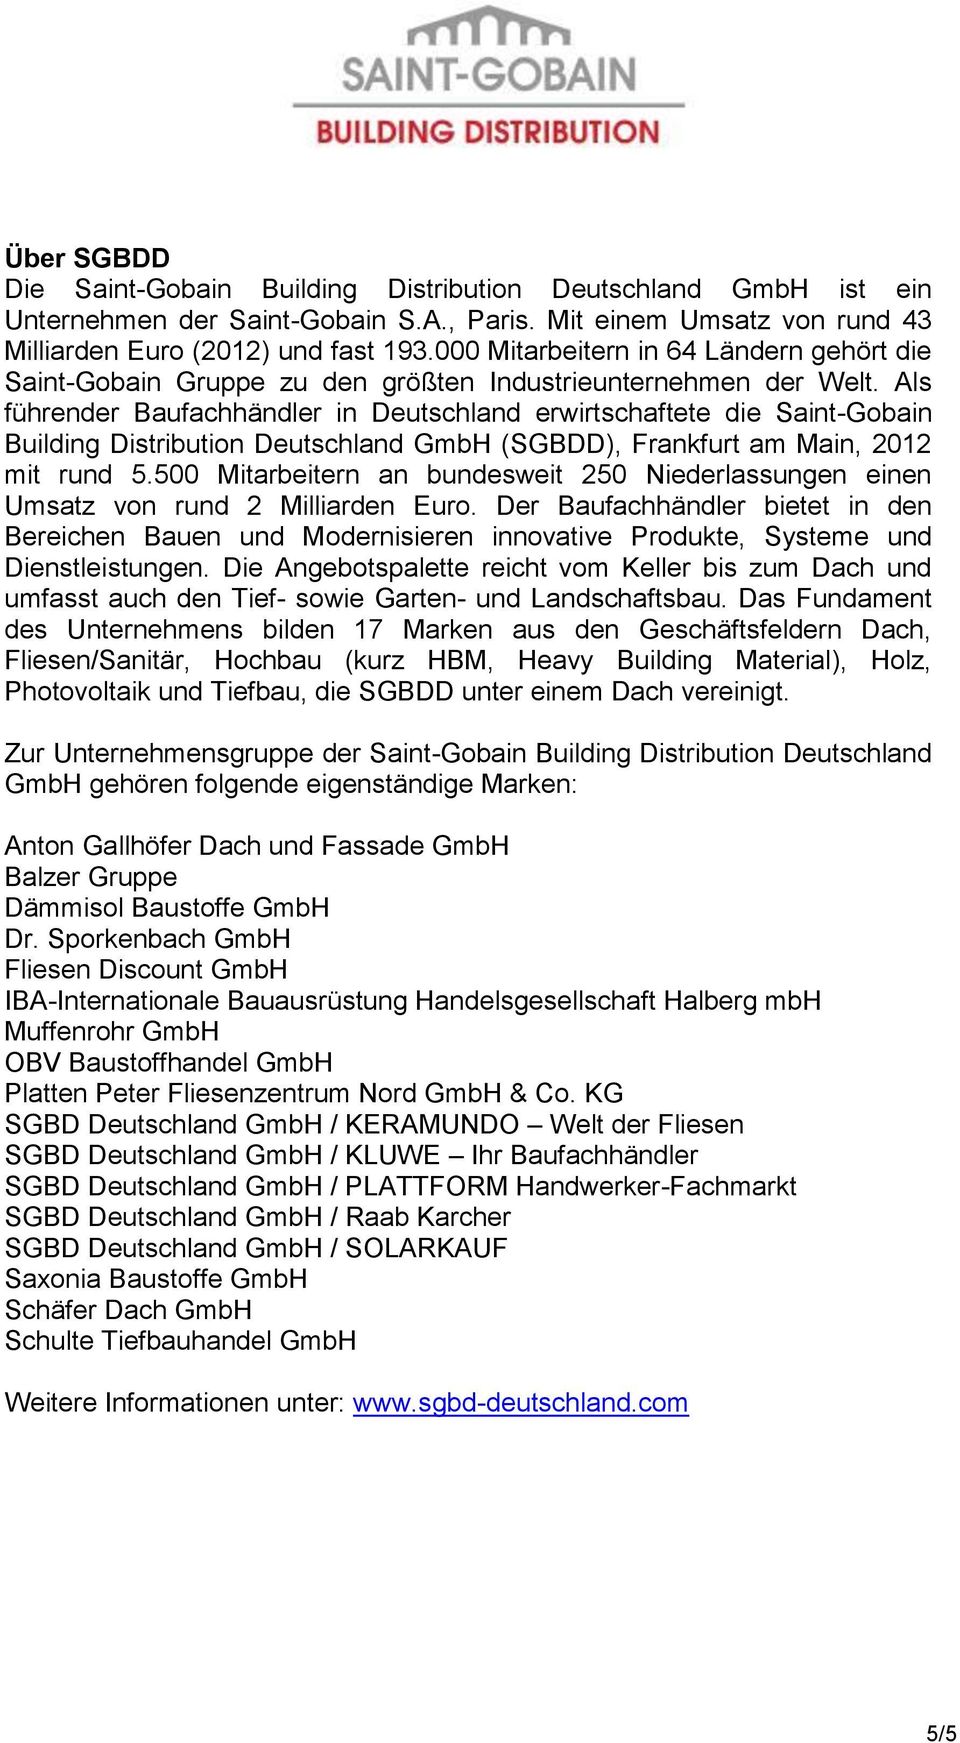 Als führender Baufachhändler in Deutschland erwirtschaftete die Saint-Gobain Building Distribution Deutschland GmbH (SGBDD), Frankfurt am Main, 2012 mit rund 5.